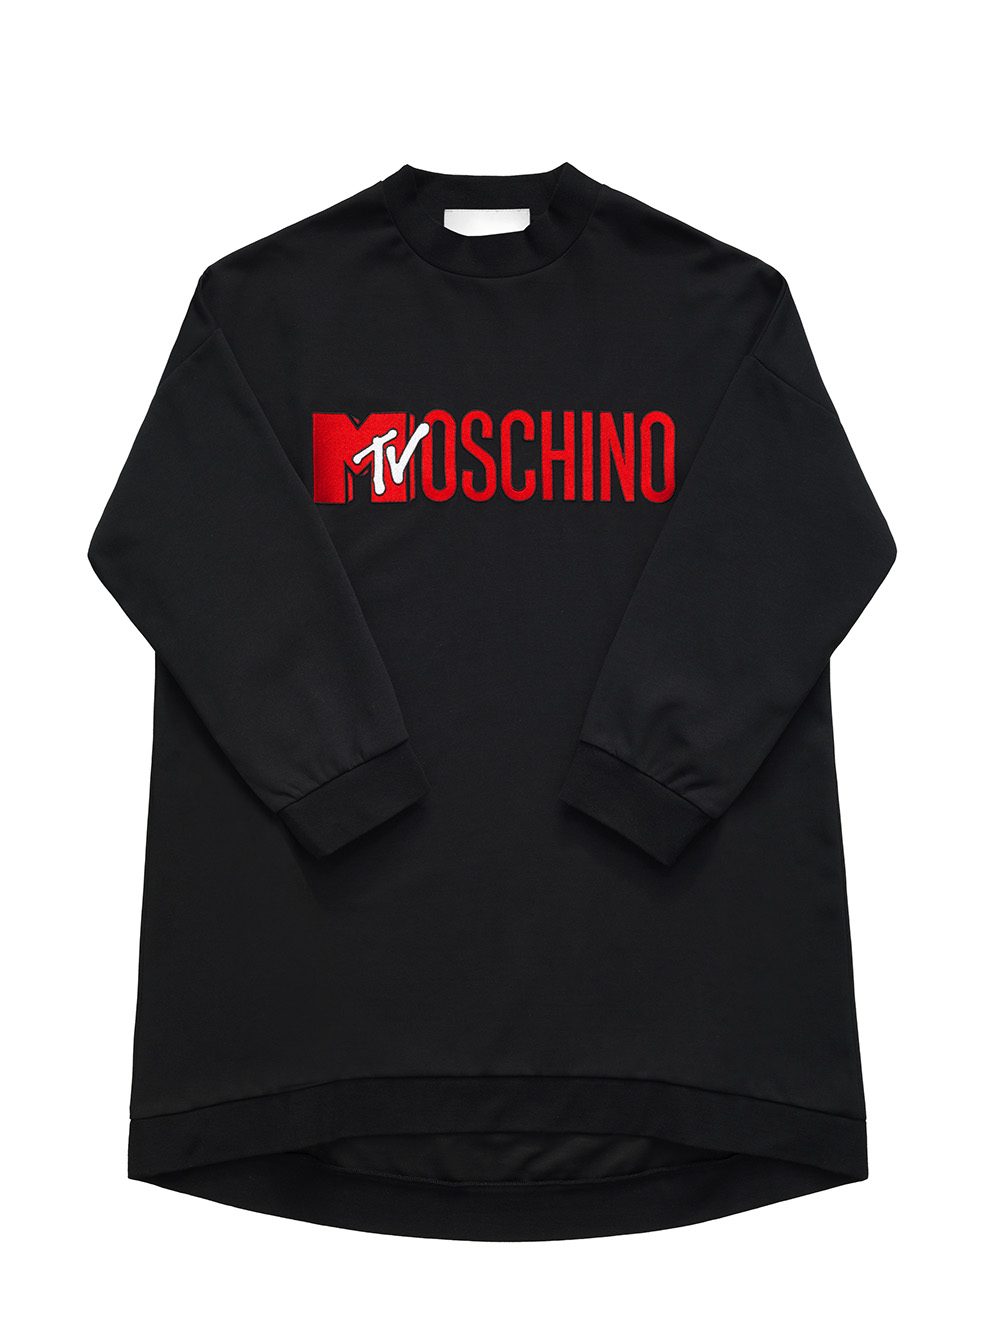 MOSCHINO [TV] H&M Sweatshirt $99.00